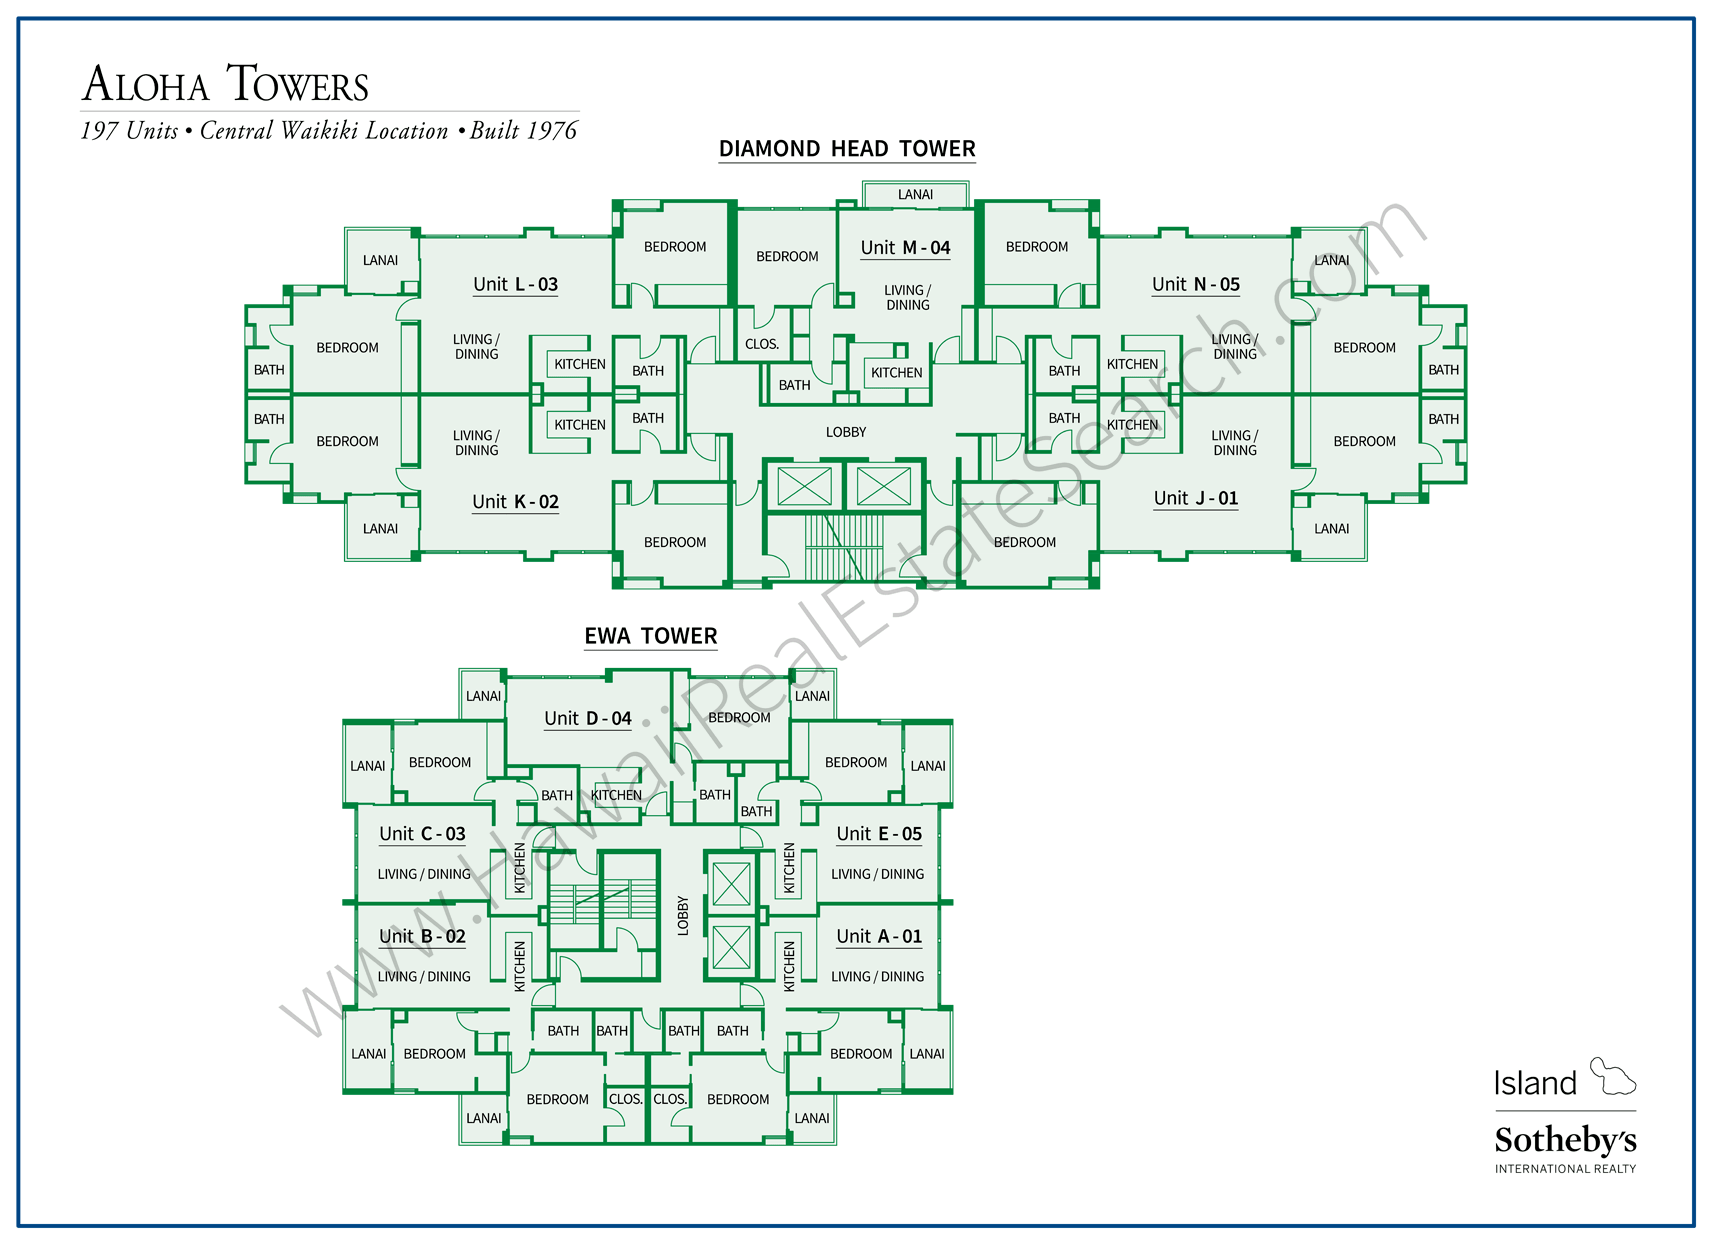 Aloha Towers Property Map 2018